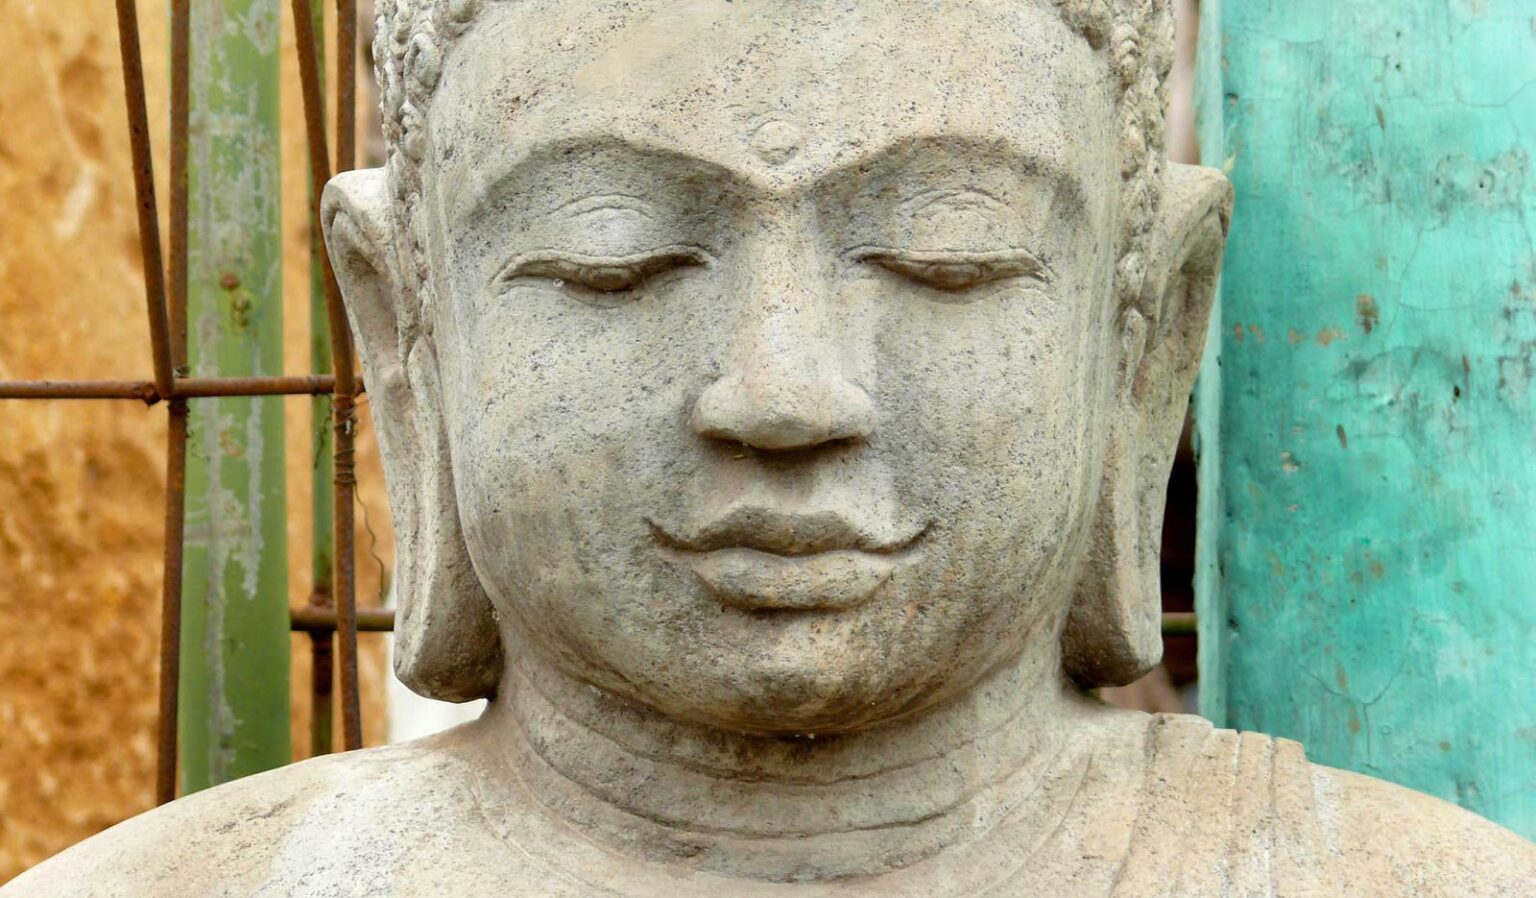 avg sats ang - ☸️ Buddhism and Hinduism 🕉️